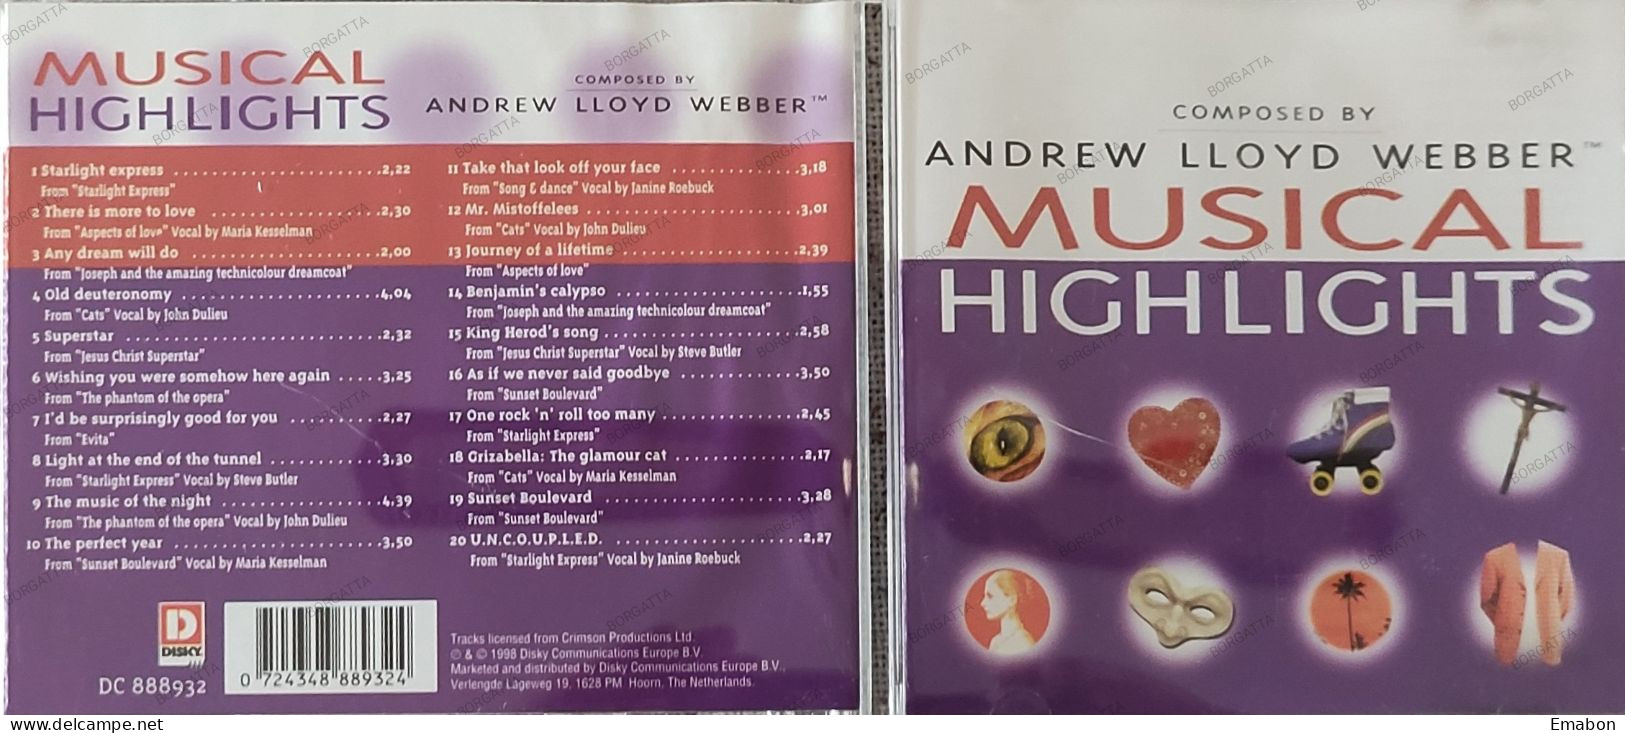 BORGATTA - FILM MUSIC - Cd ANDREW LLOYD -  MUSICAL HIGHLIGHTS -  DISKY 1998 - USATO In Buono Stato - Musica Di Film